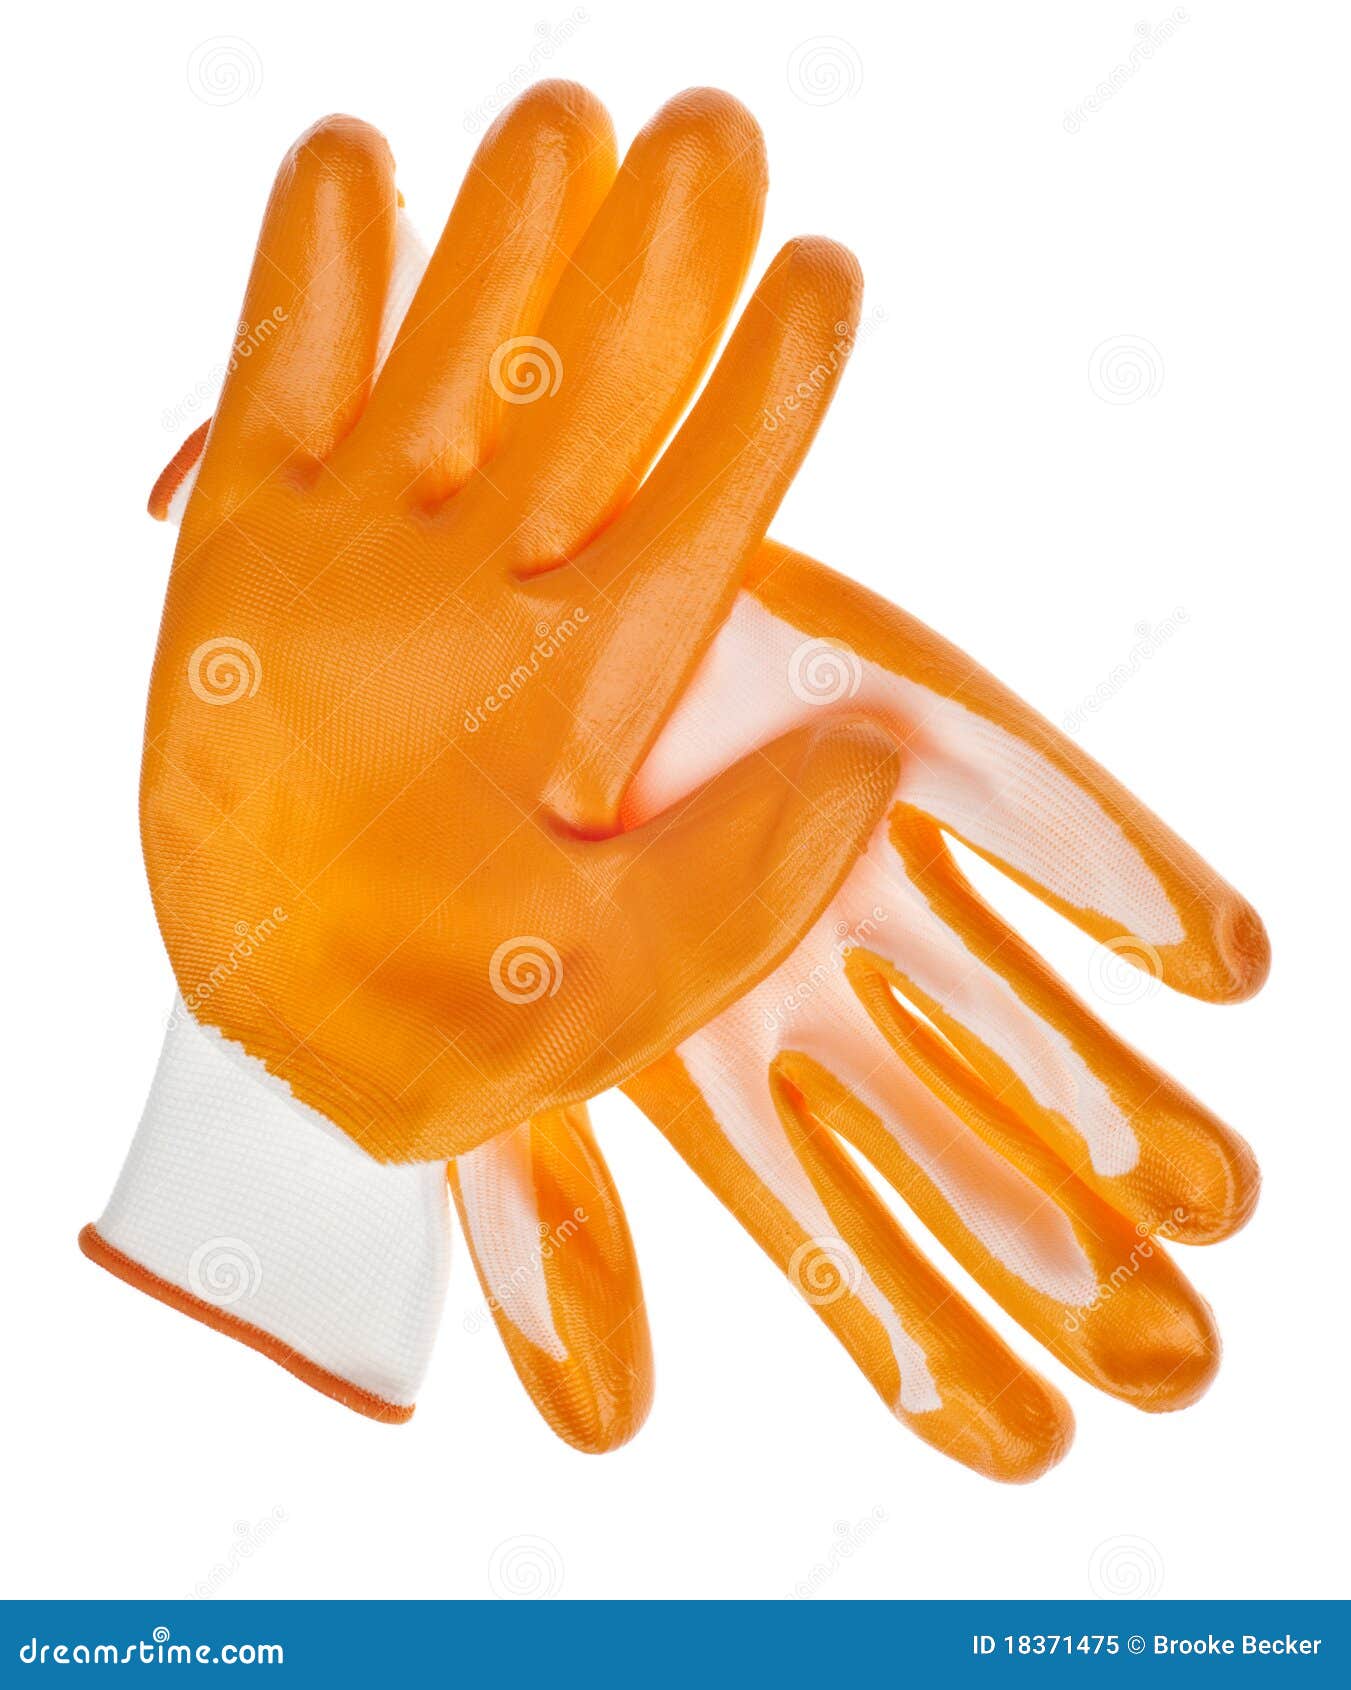 orange water resistant garden gloves